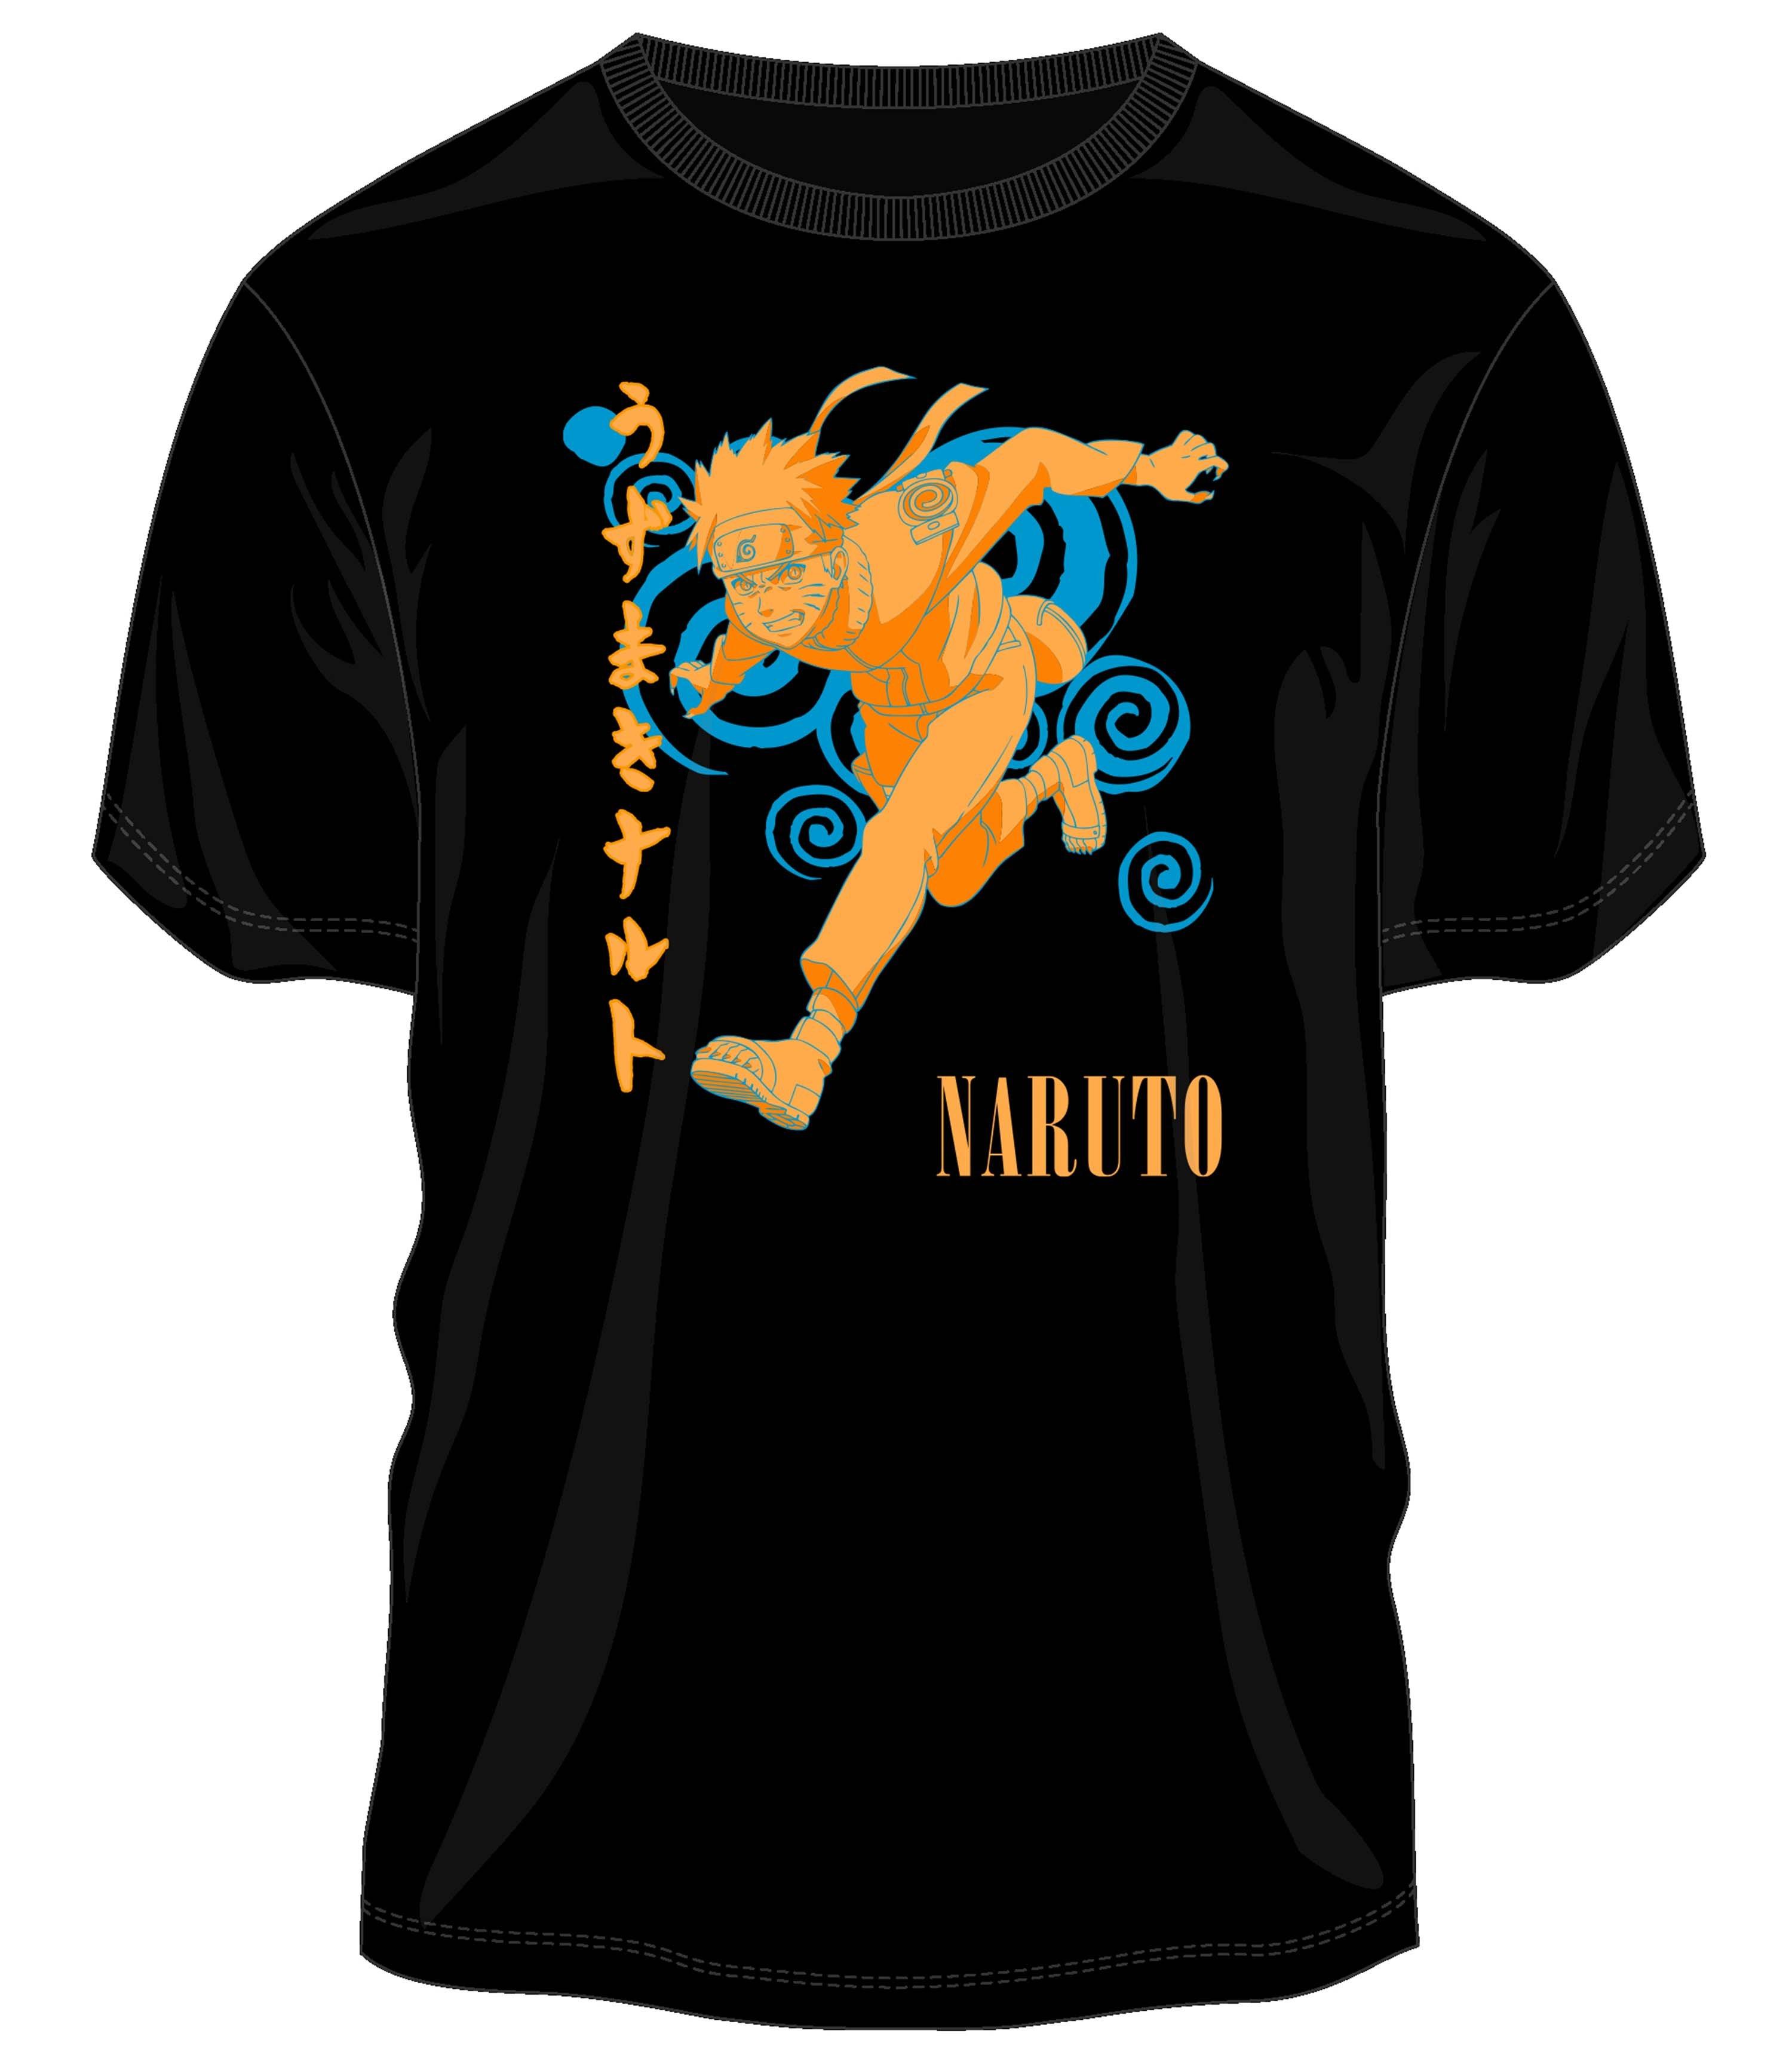 Shirt S - Naruto Black